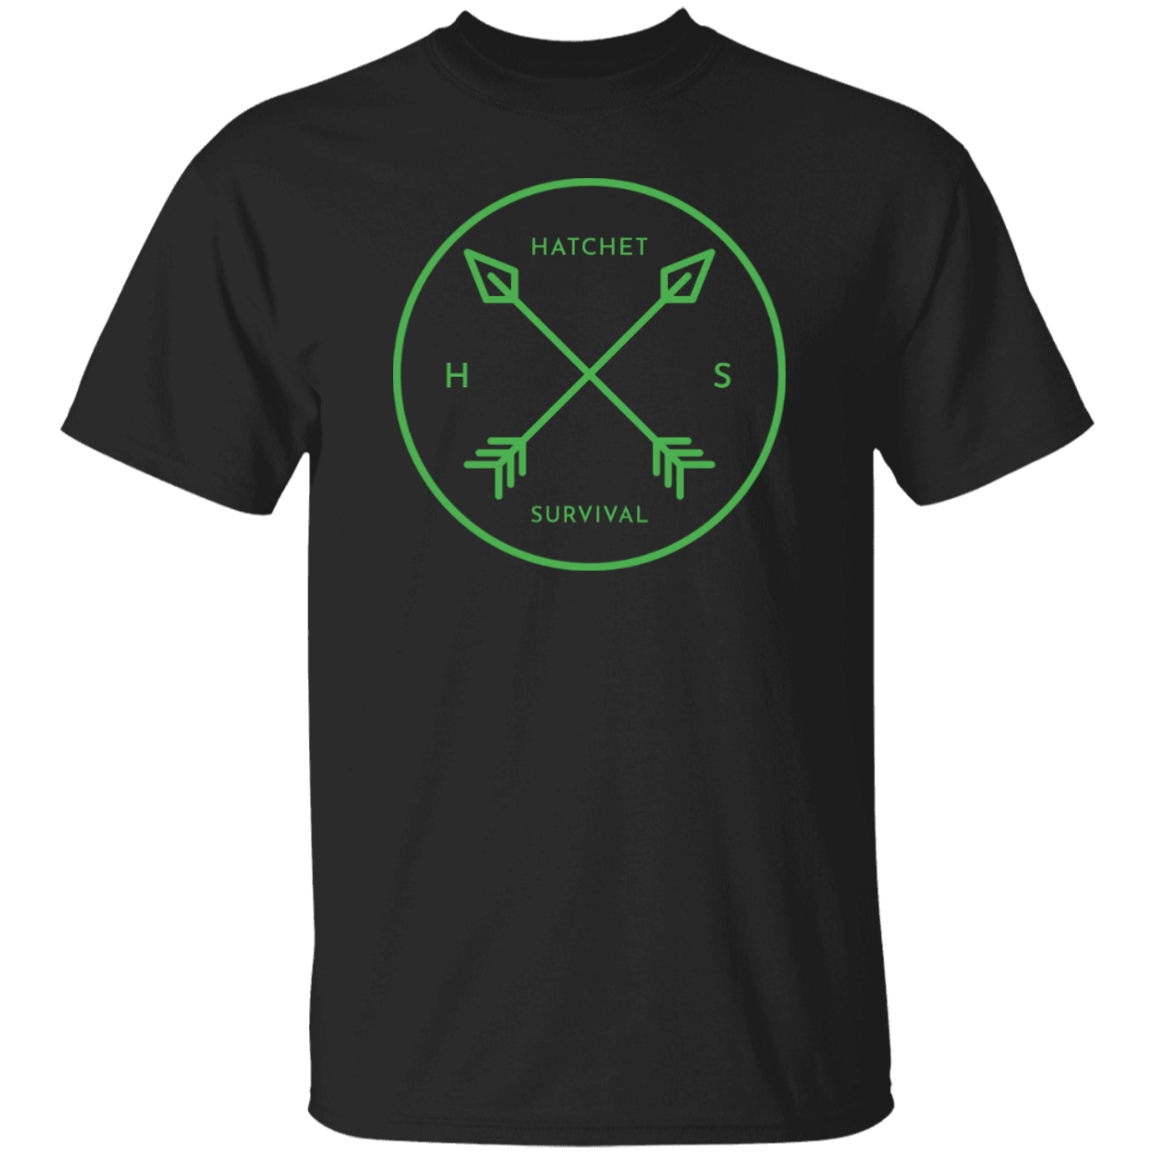 Ultra Cotton Green "Hatchet Survival" T-Shirt